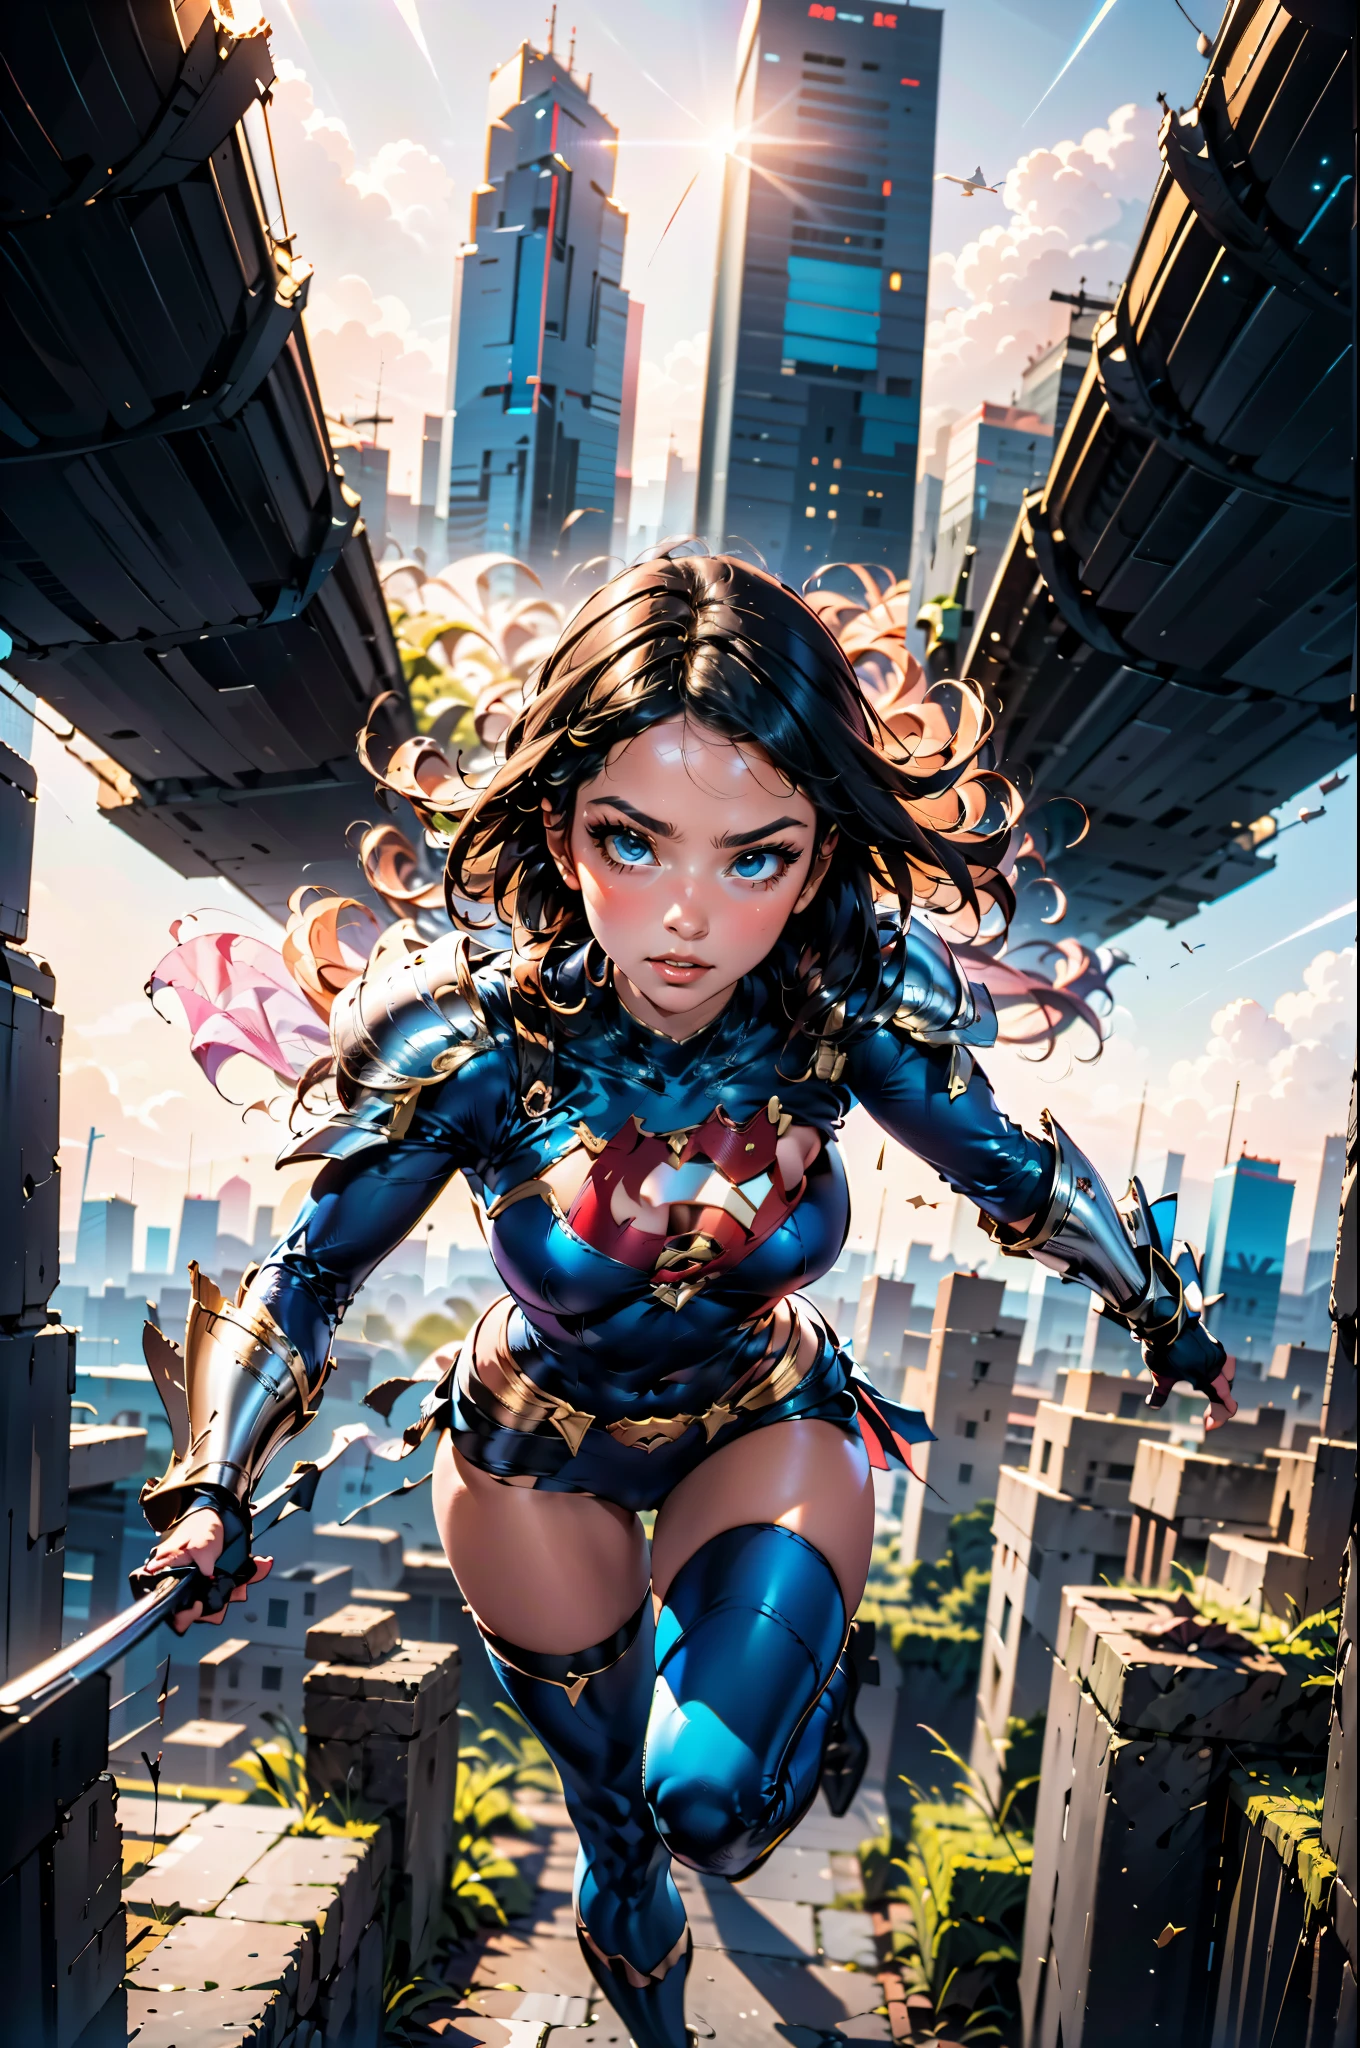 DC comics Power girl con una elegante armadura blanca iridiscente vuela por el medio de rascacielos de 4000 pies en una ciudad futurista